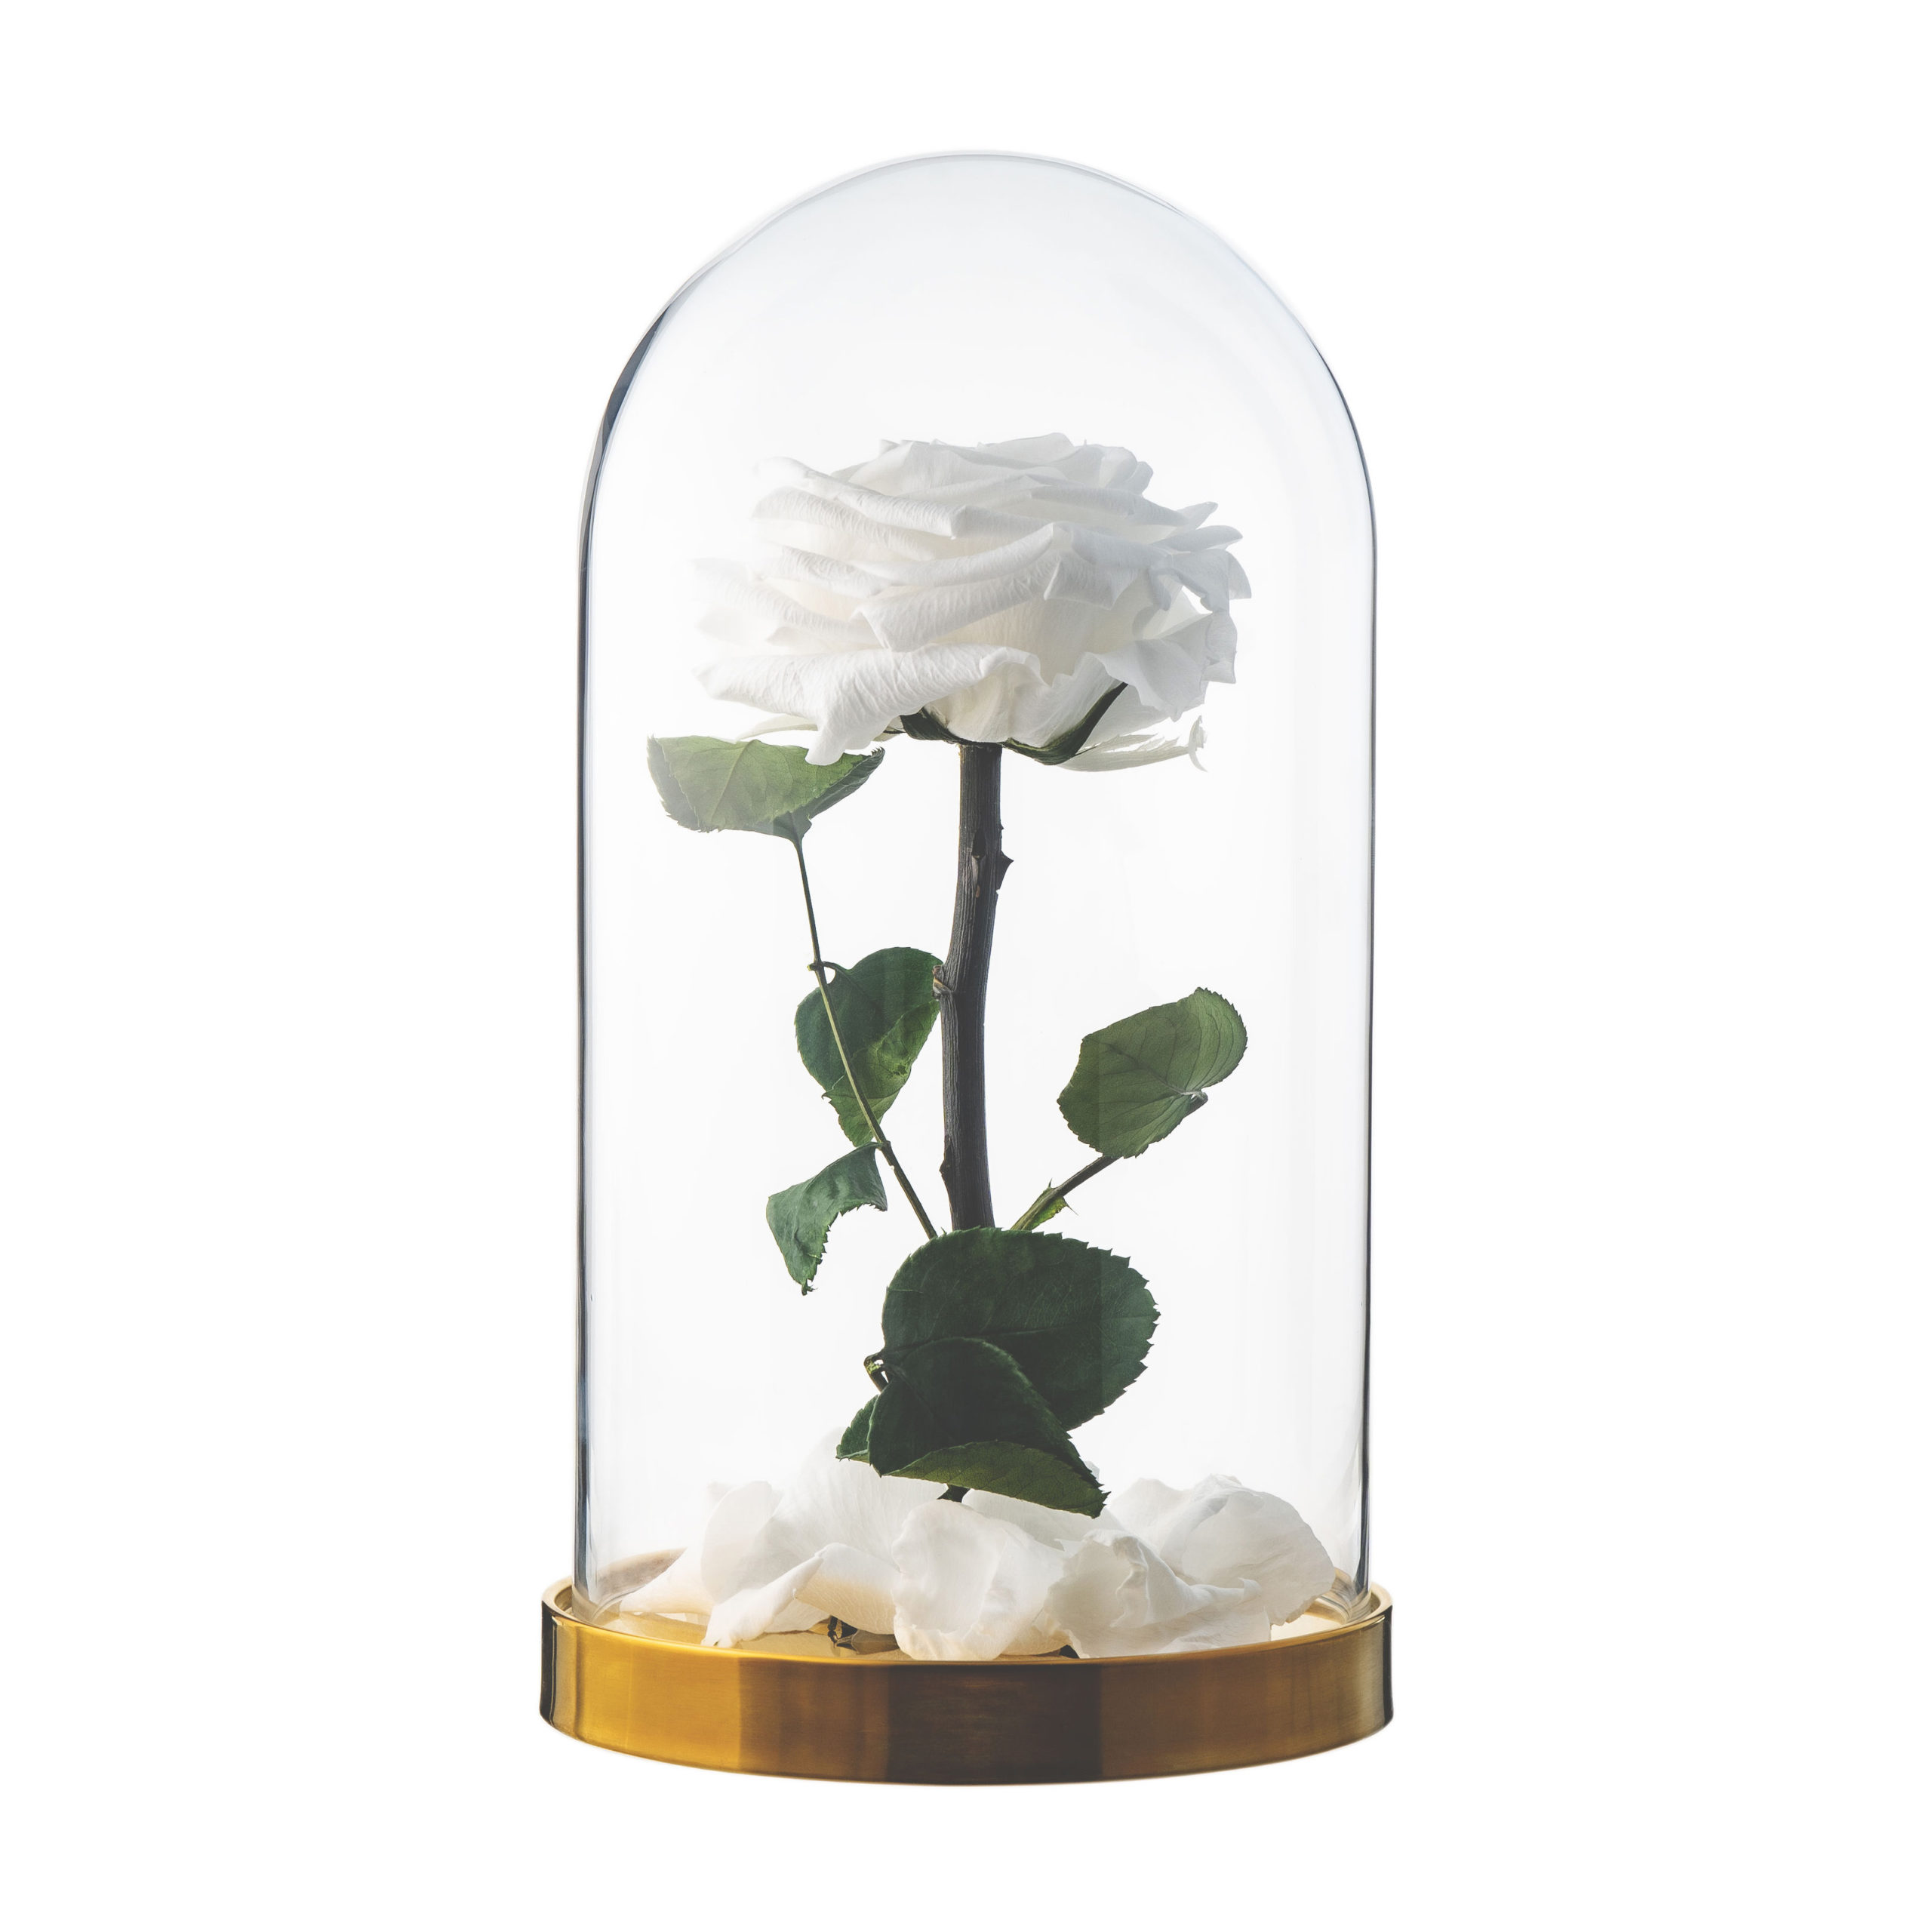 Rose in glass